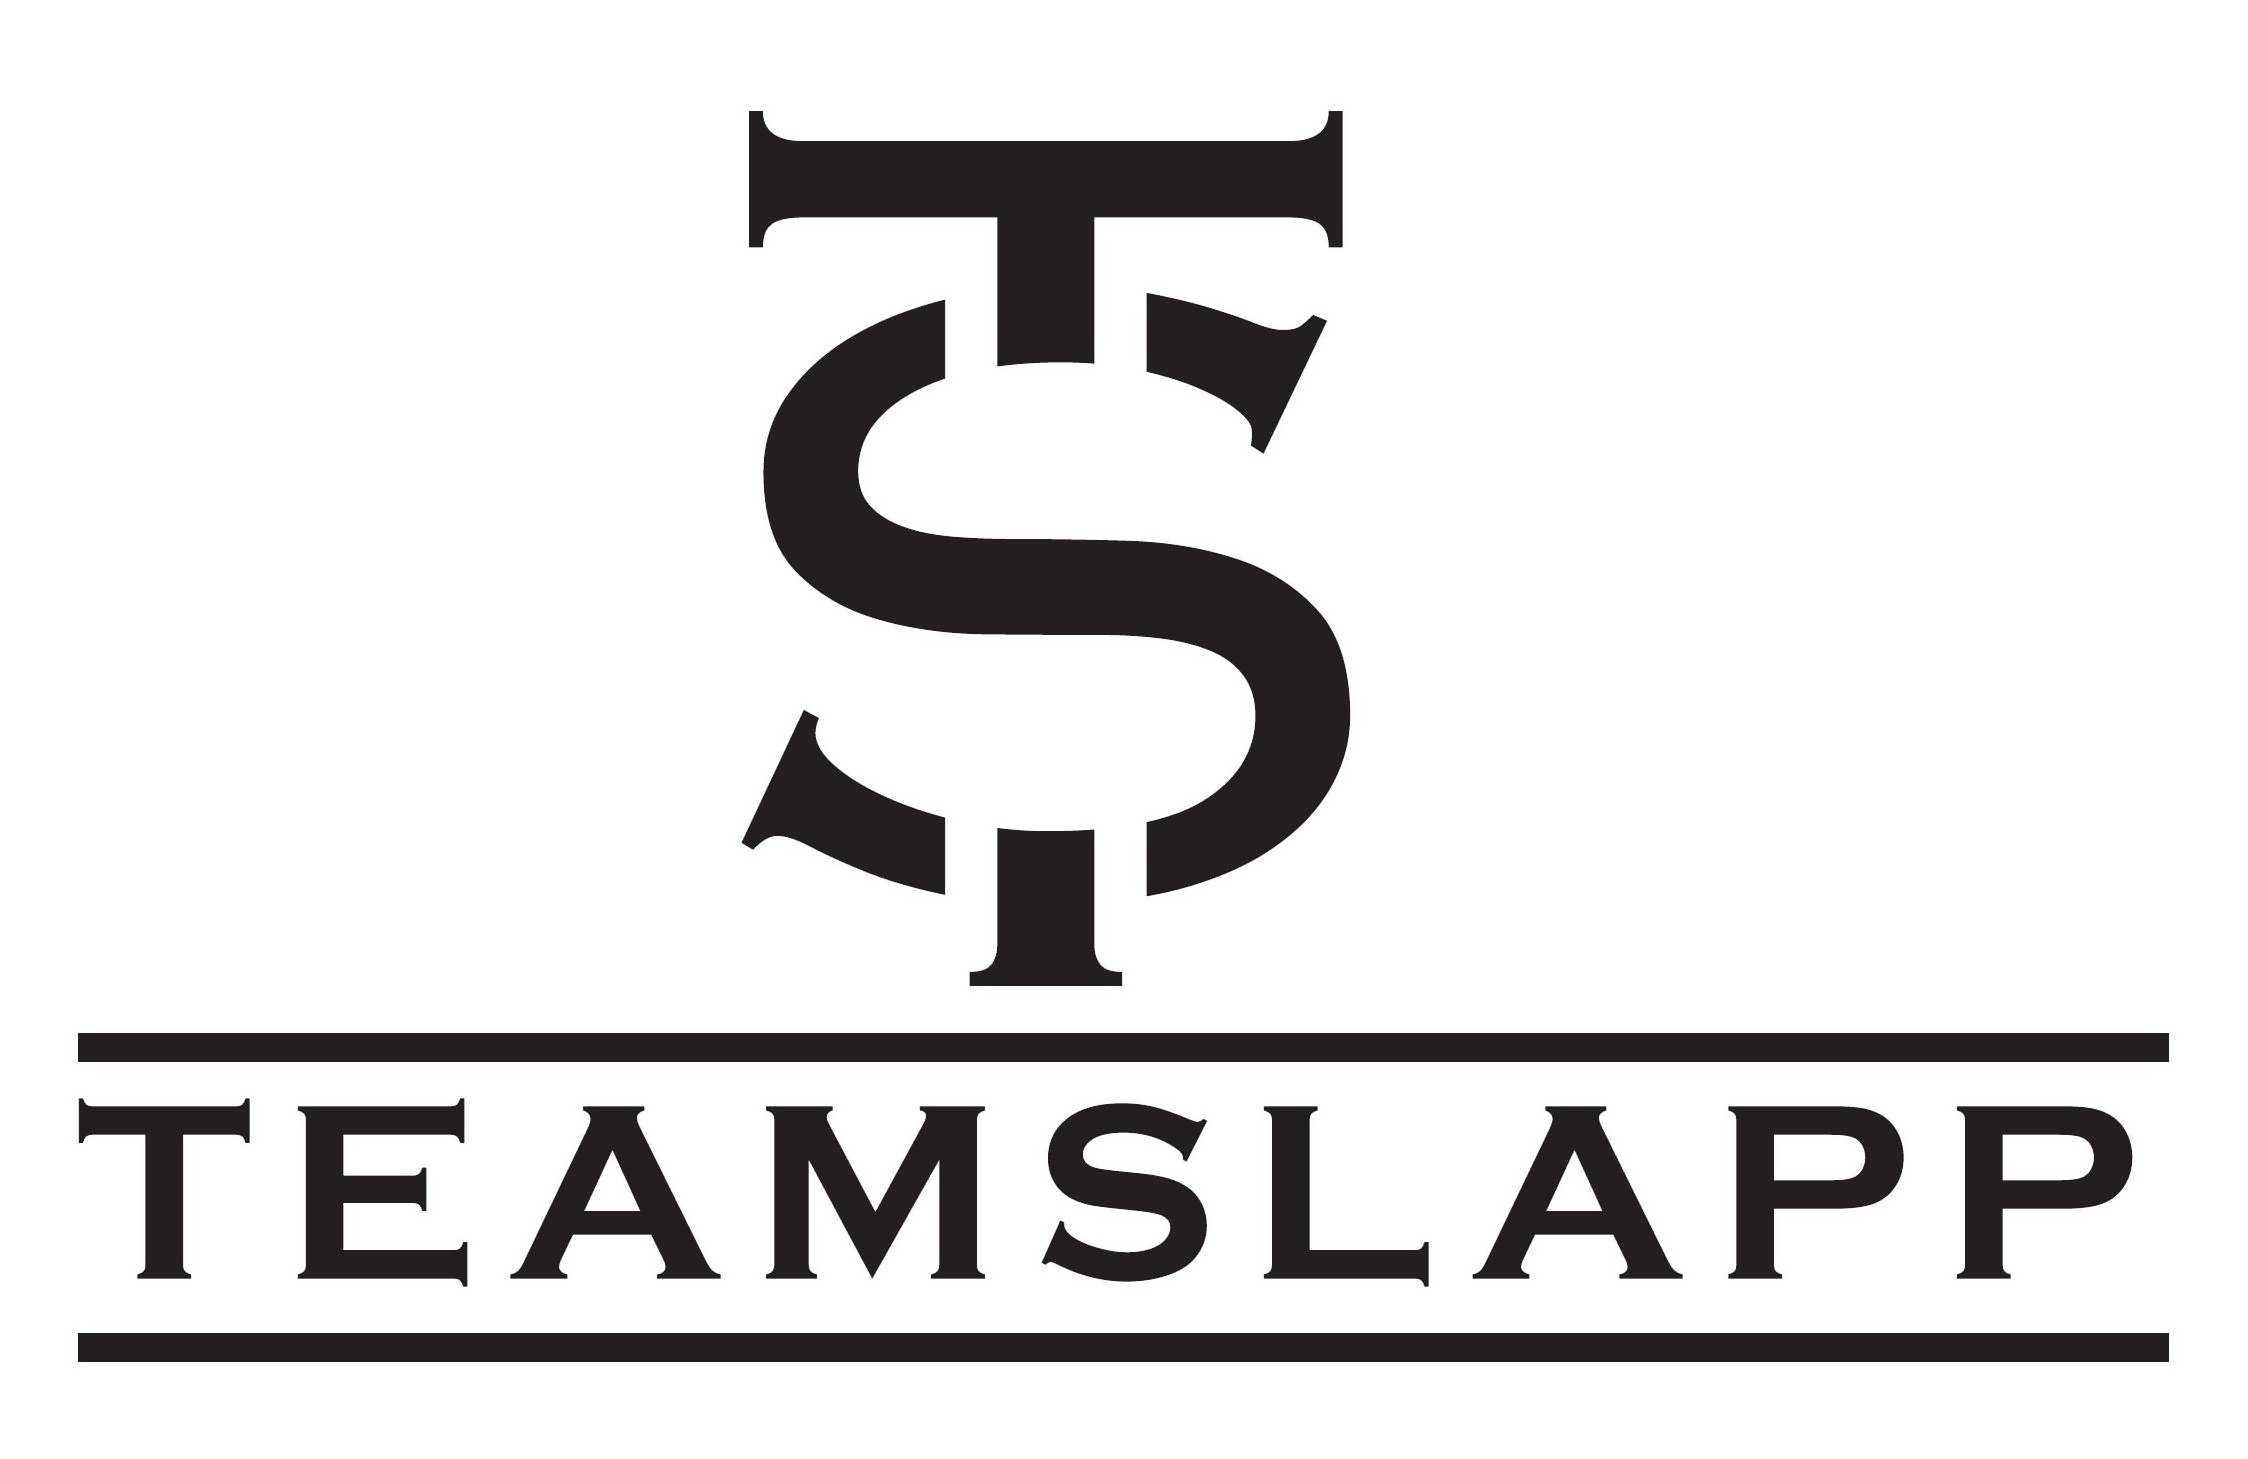  TEAMSLAPP AND TS